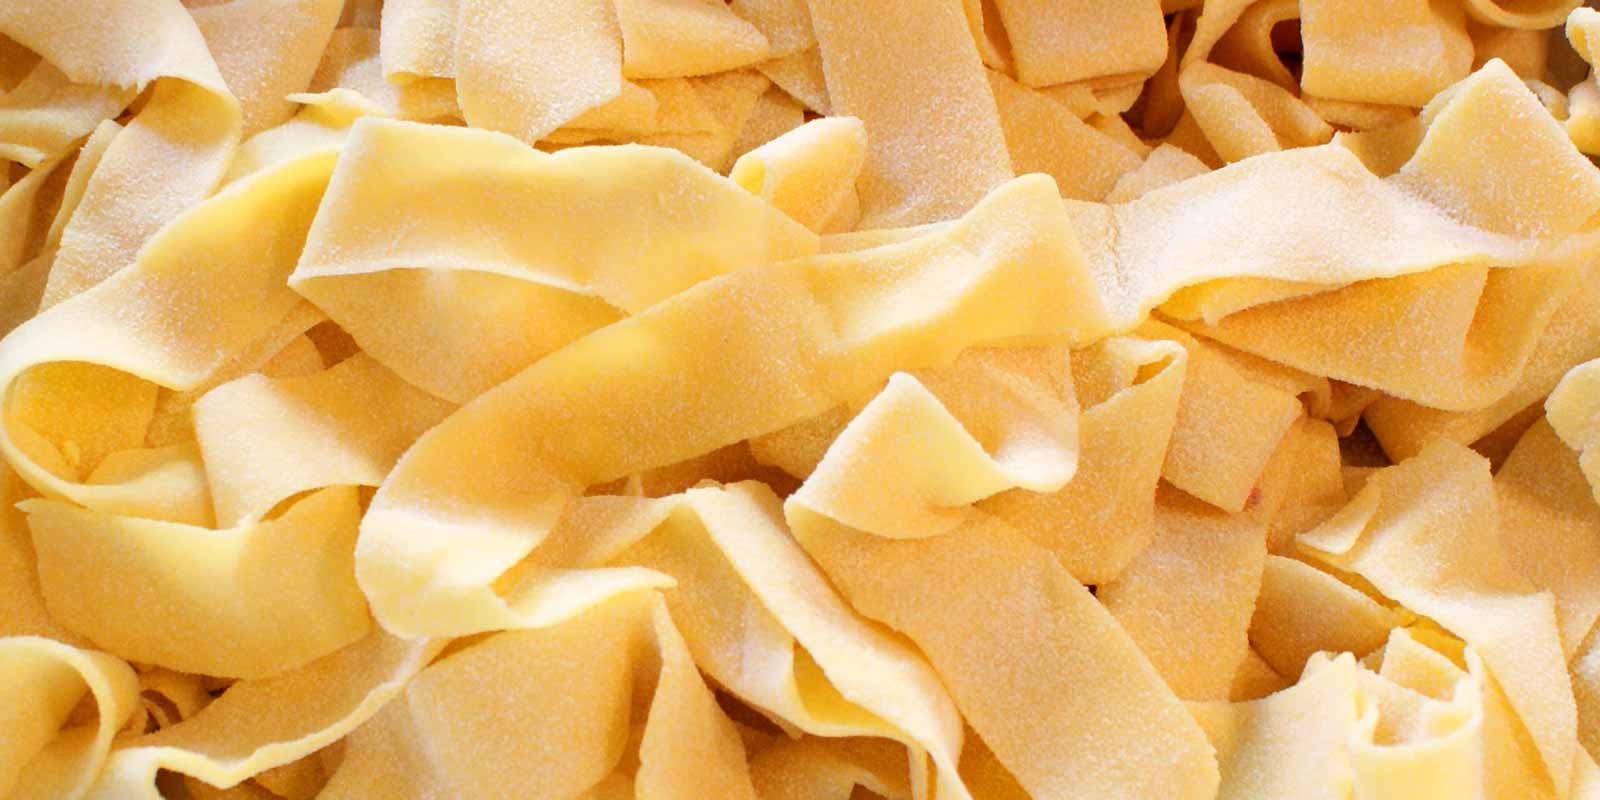 Pasta y harina De Cecco La empresa italiana De Cecco produce pasta y harina de excelente calidad desde 1886.
¡Ver por ti mismo!